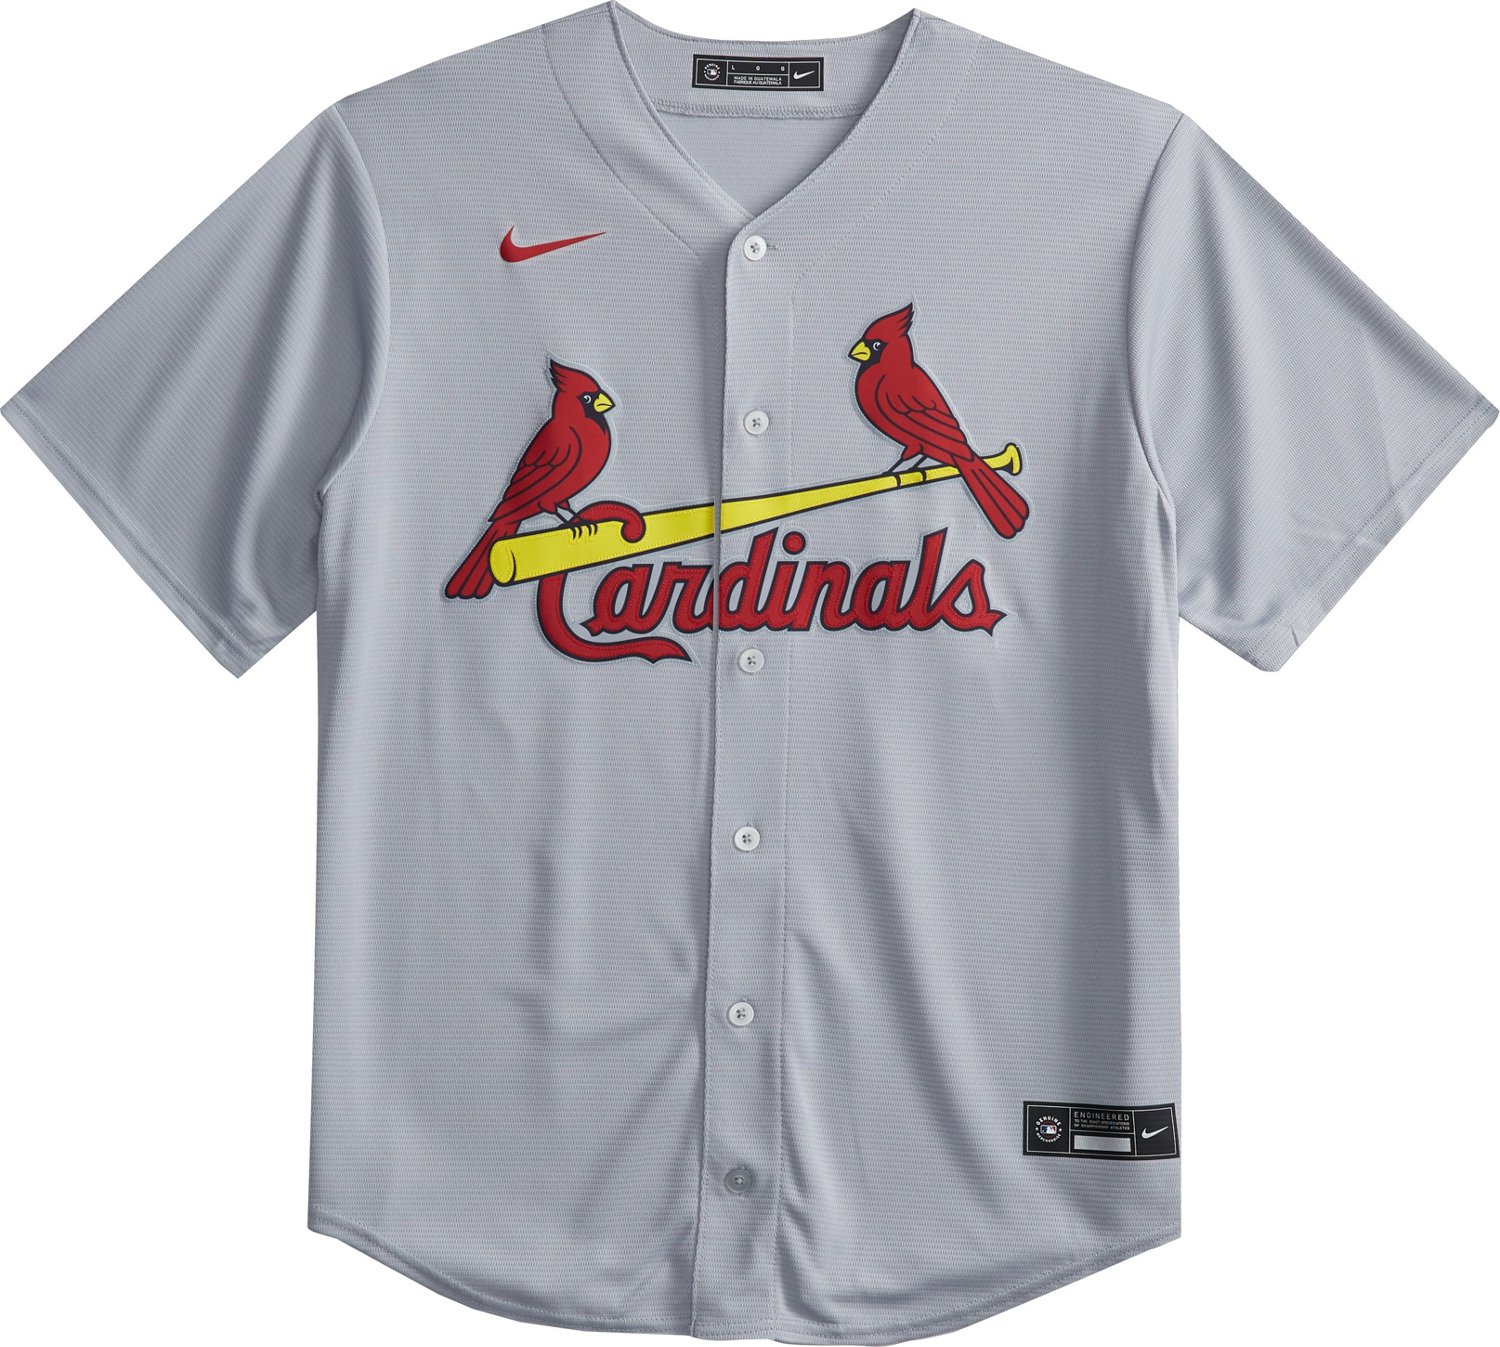 St. Louis Cardinals Baseball Jerseys, Cardinals Jerseys, Authentic